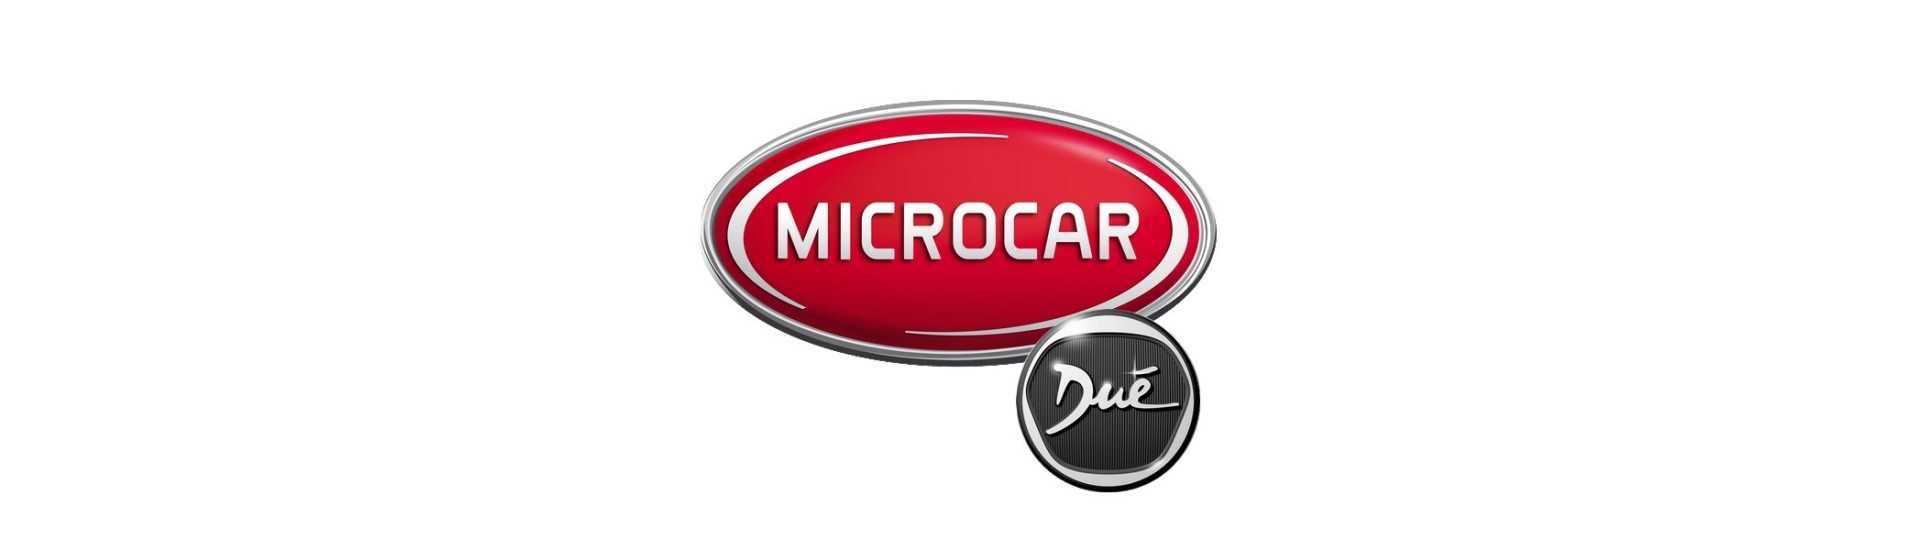 Cea mai ieftină maşină fără permis Microcar Dué